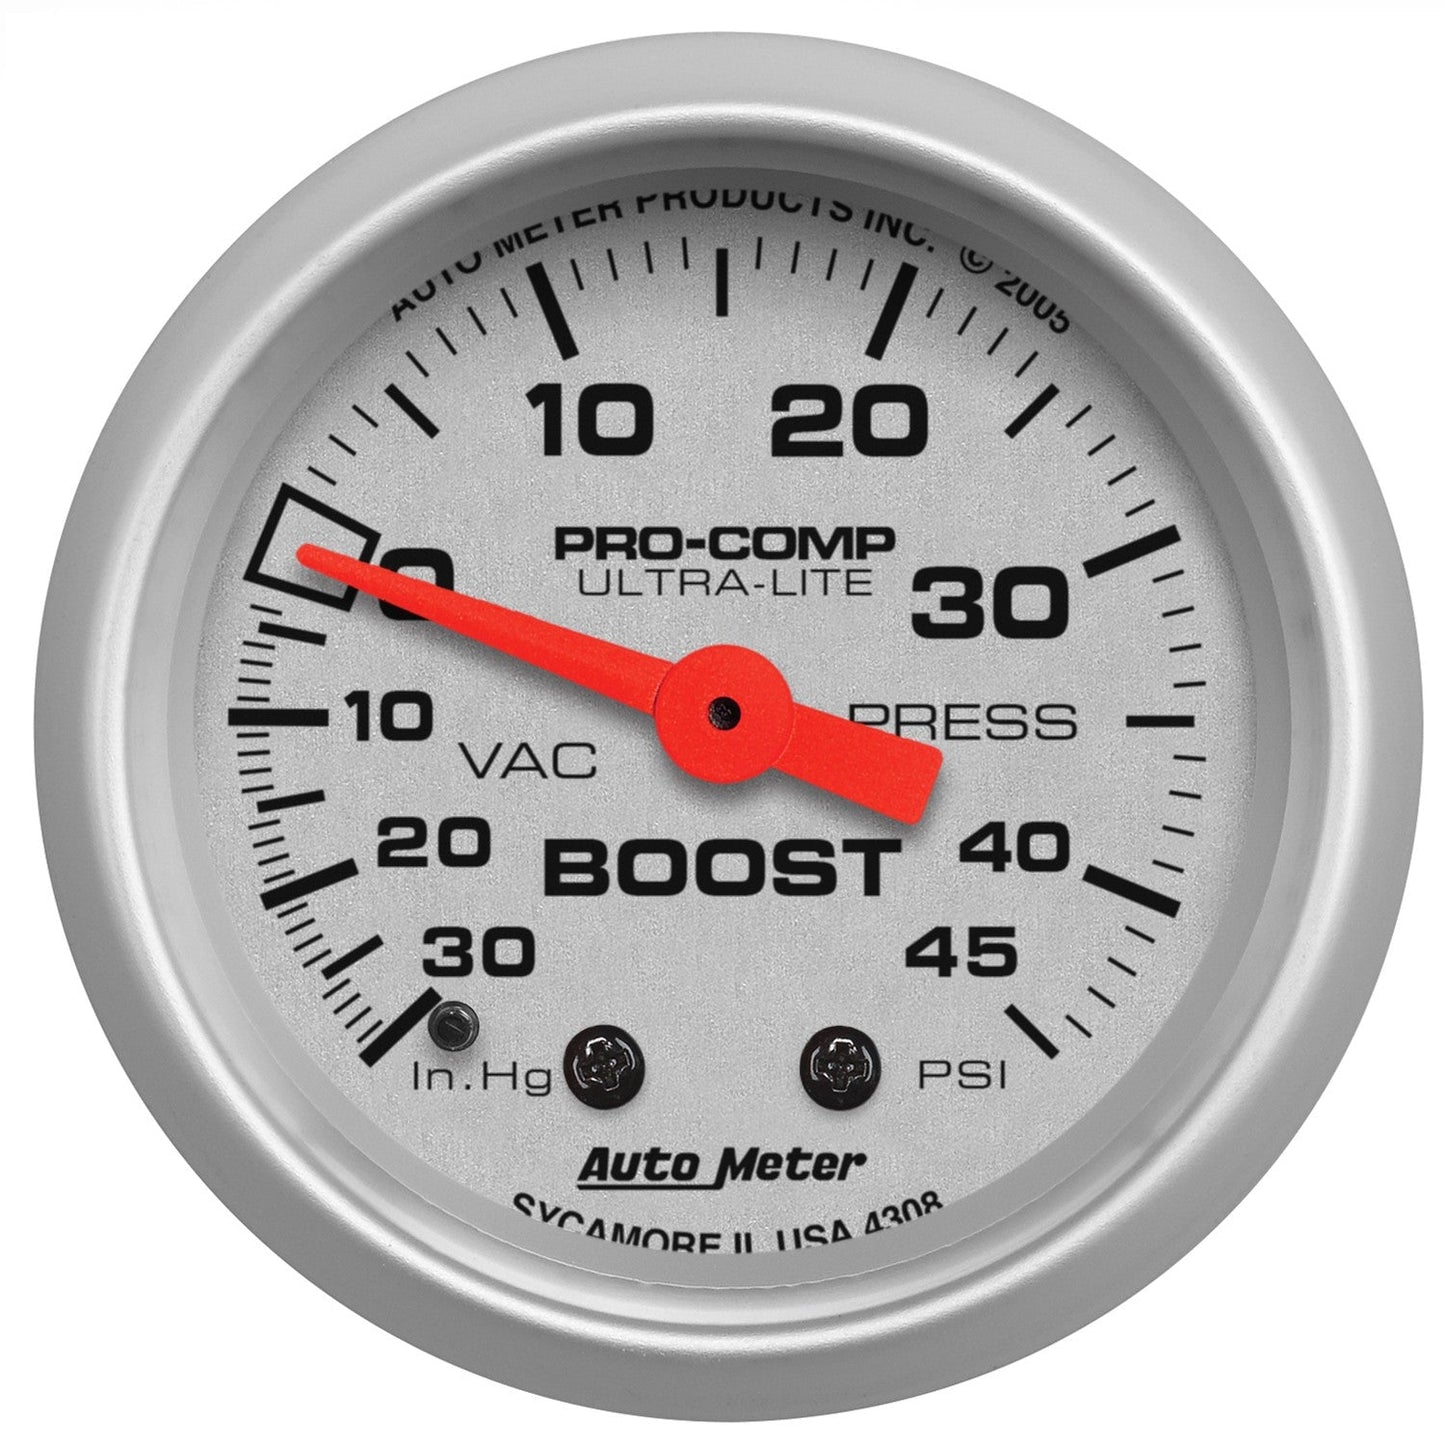 AutoMeter - 2-1/16" BOOST/VACUUM, 30 IN HG/45 PSI, MECÂNICO, ULTRA-LITE (4308)